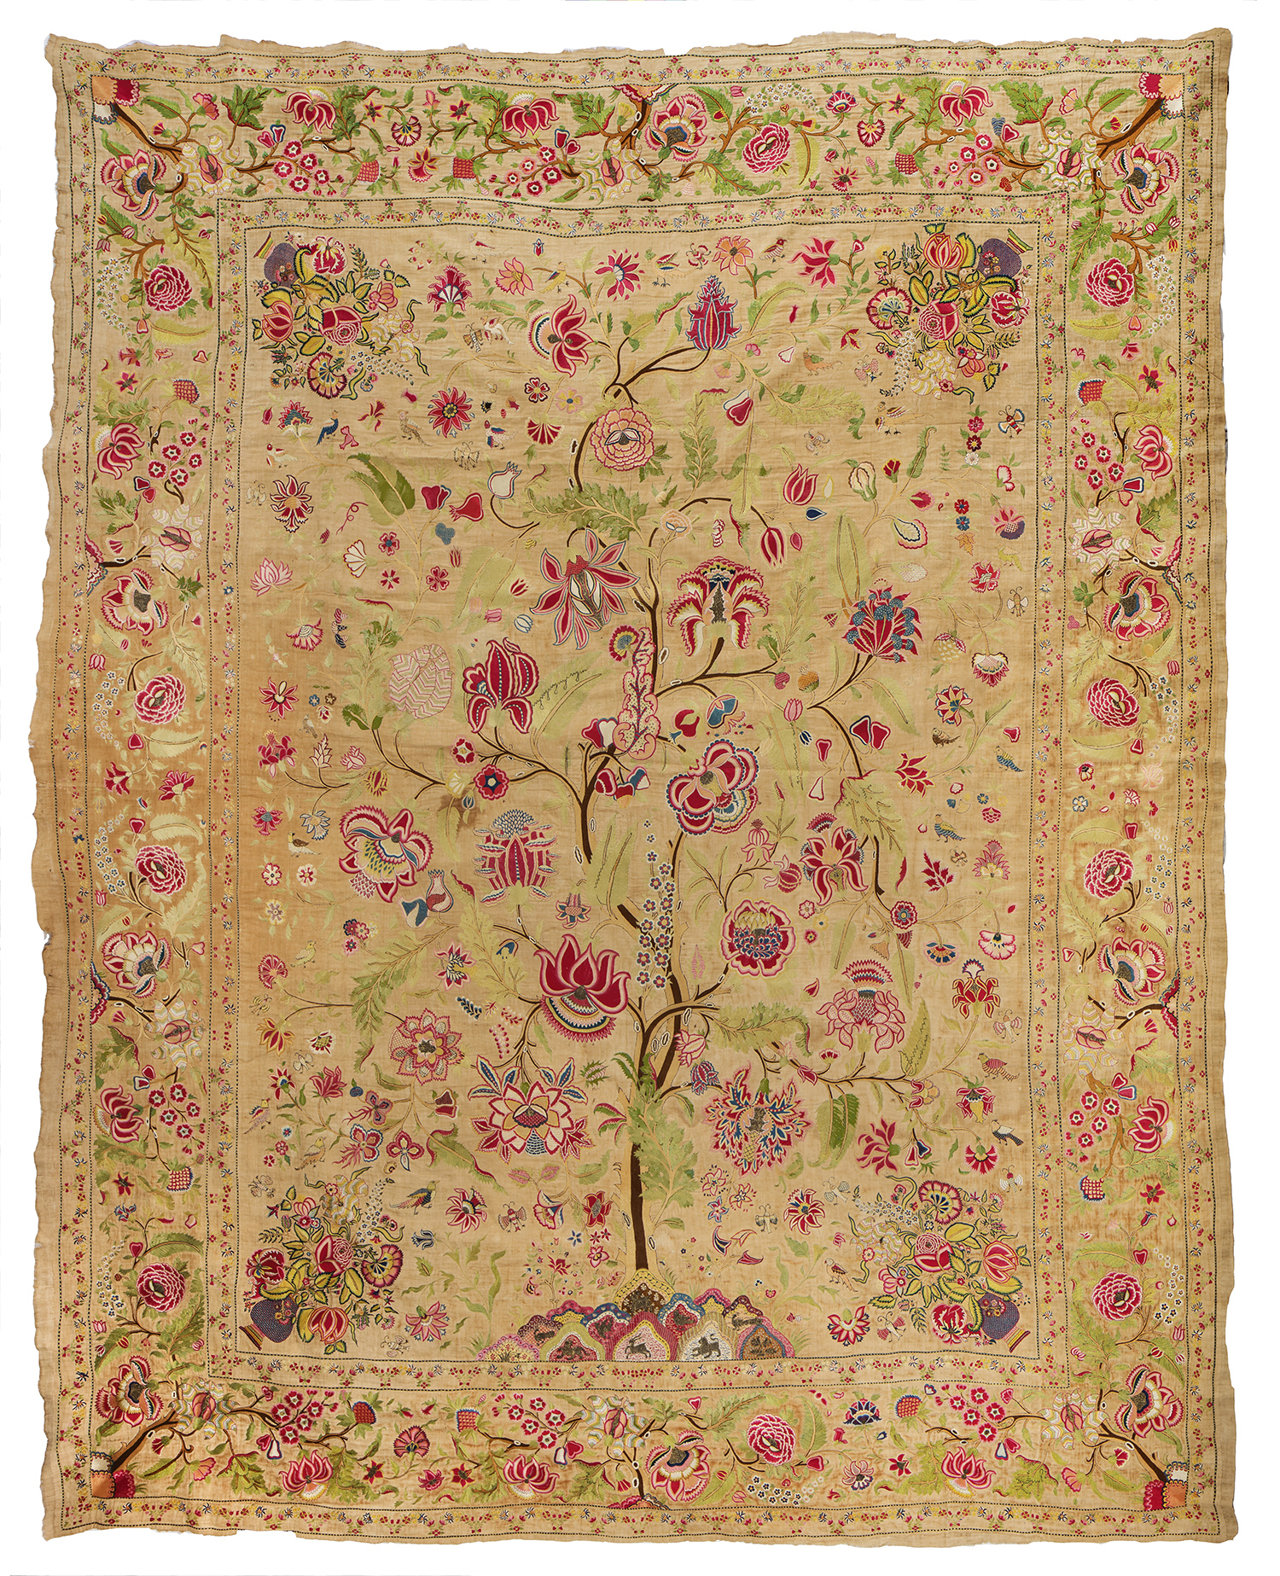 titel: Palempore, materiaal: zijde en katoen, datering:1740-1750, herkomst: India afmeting: 335 x 280 cm.